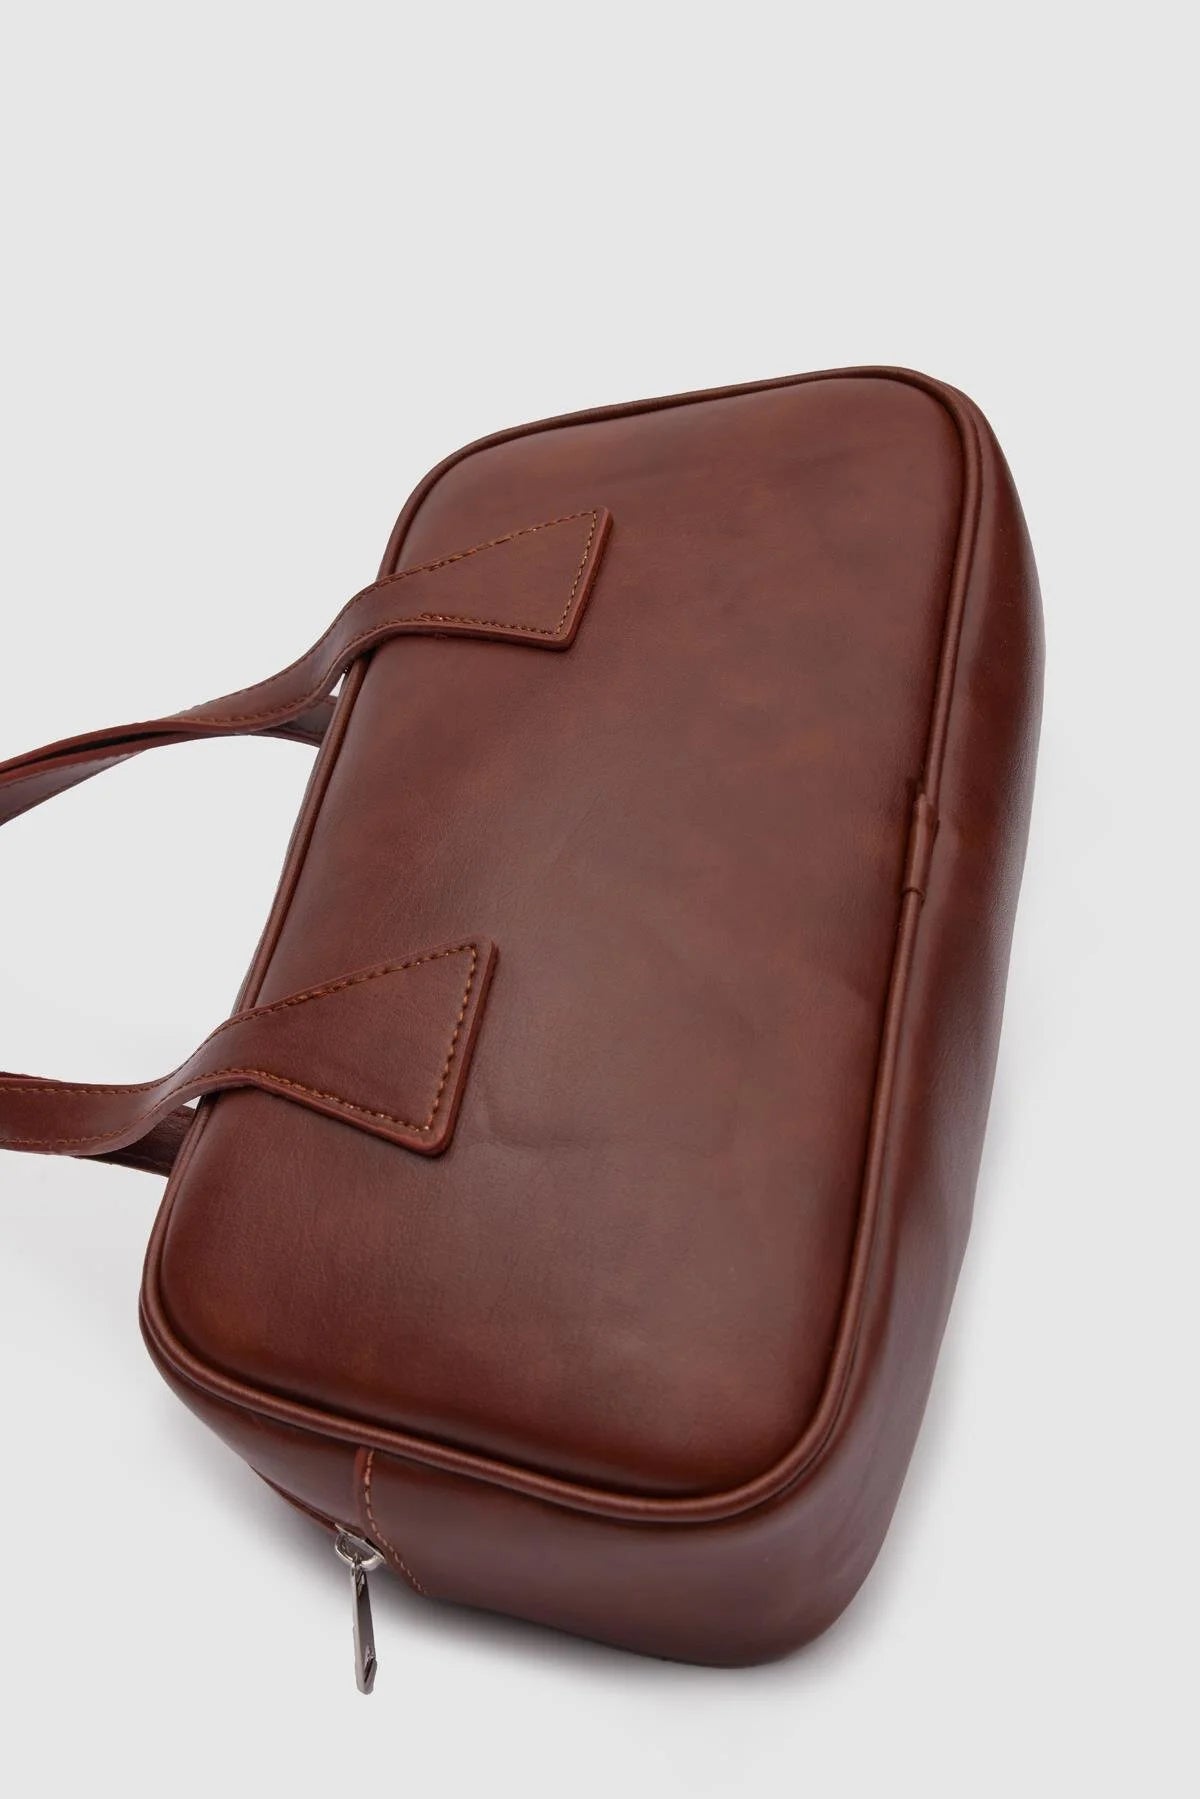 Rectangle Tan Hand and Shoulder Bag Mabel handbag LUNARITY GARAGE   